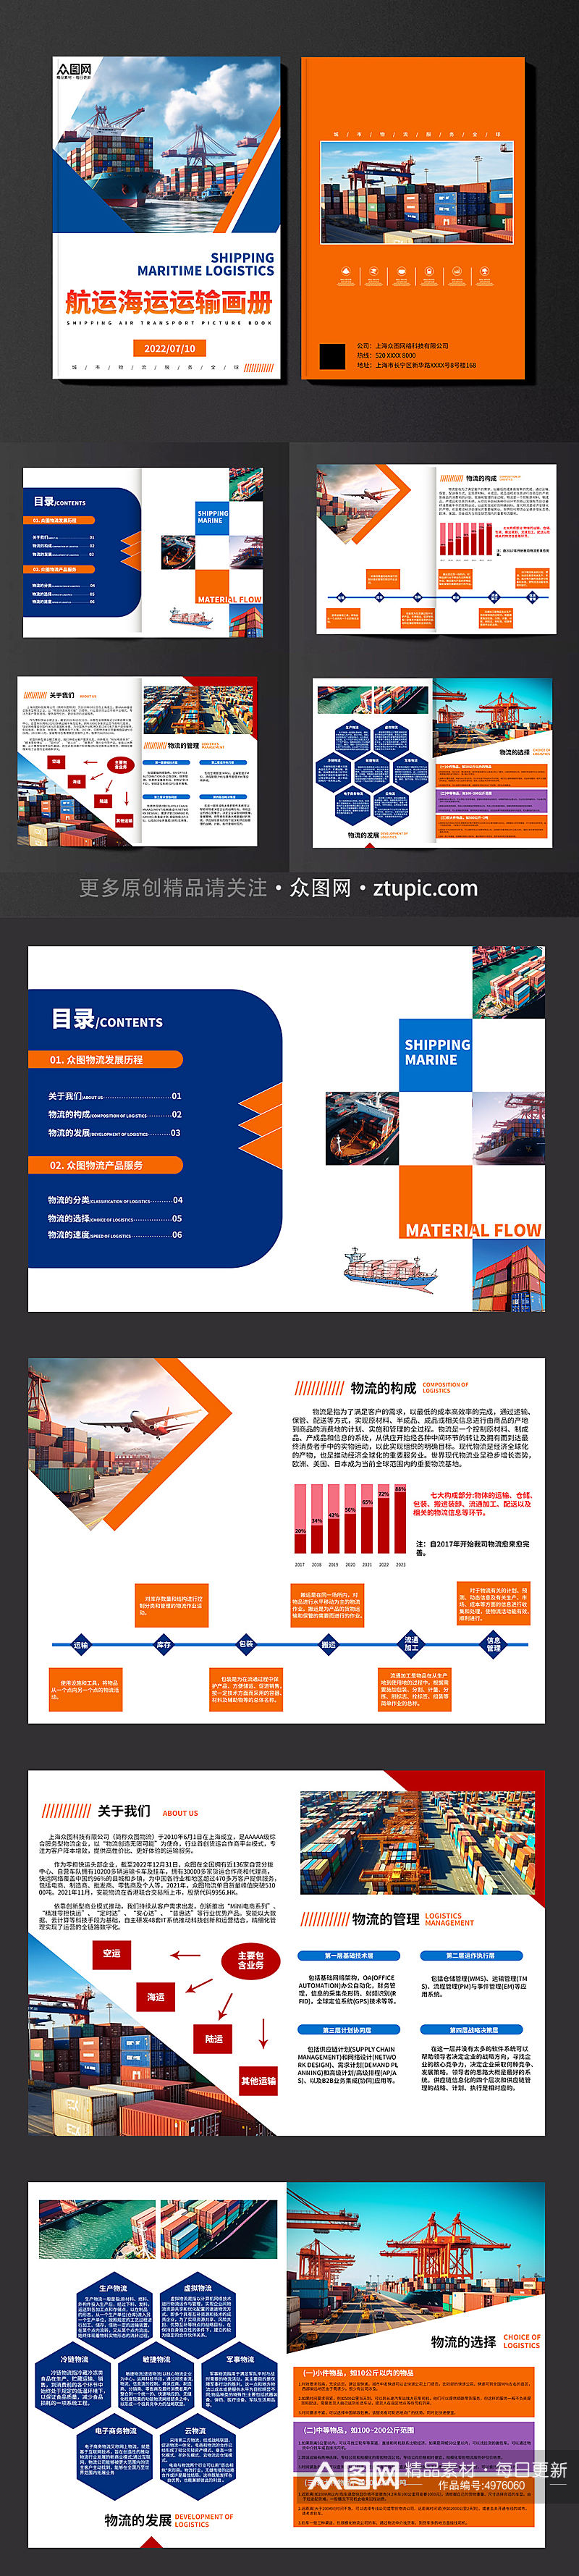 橙色航运海运物流运输宣传画册素材